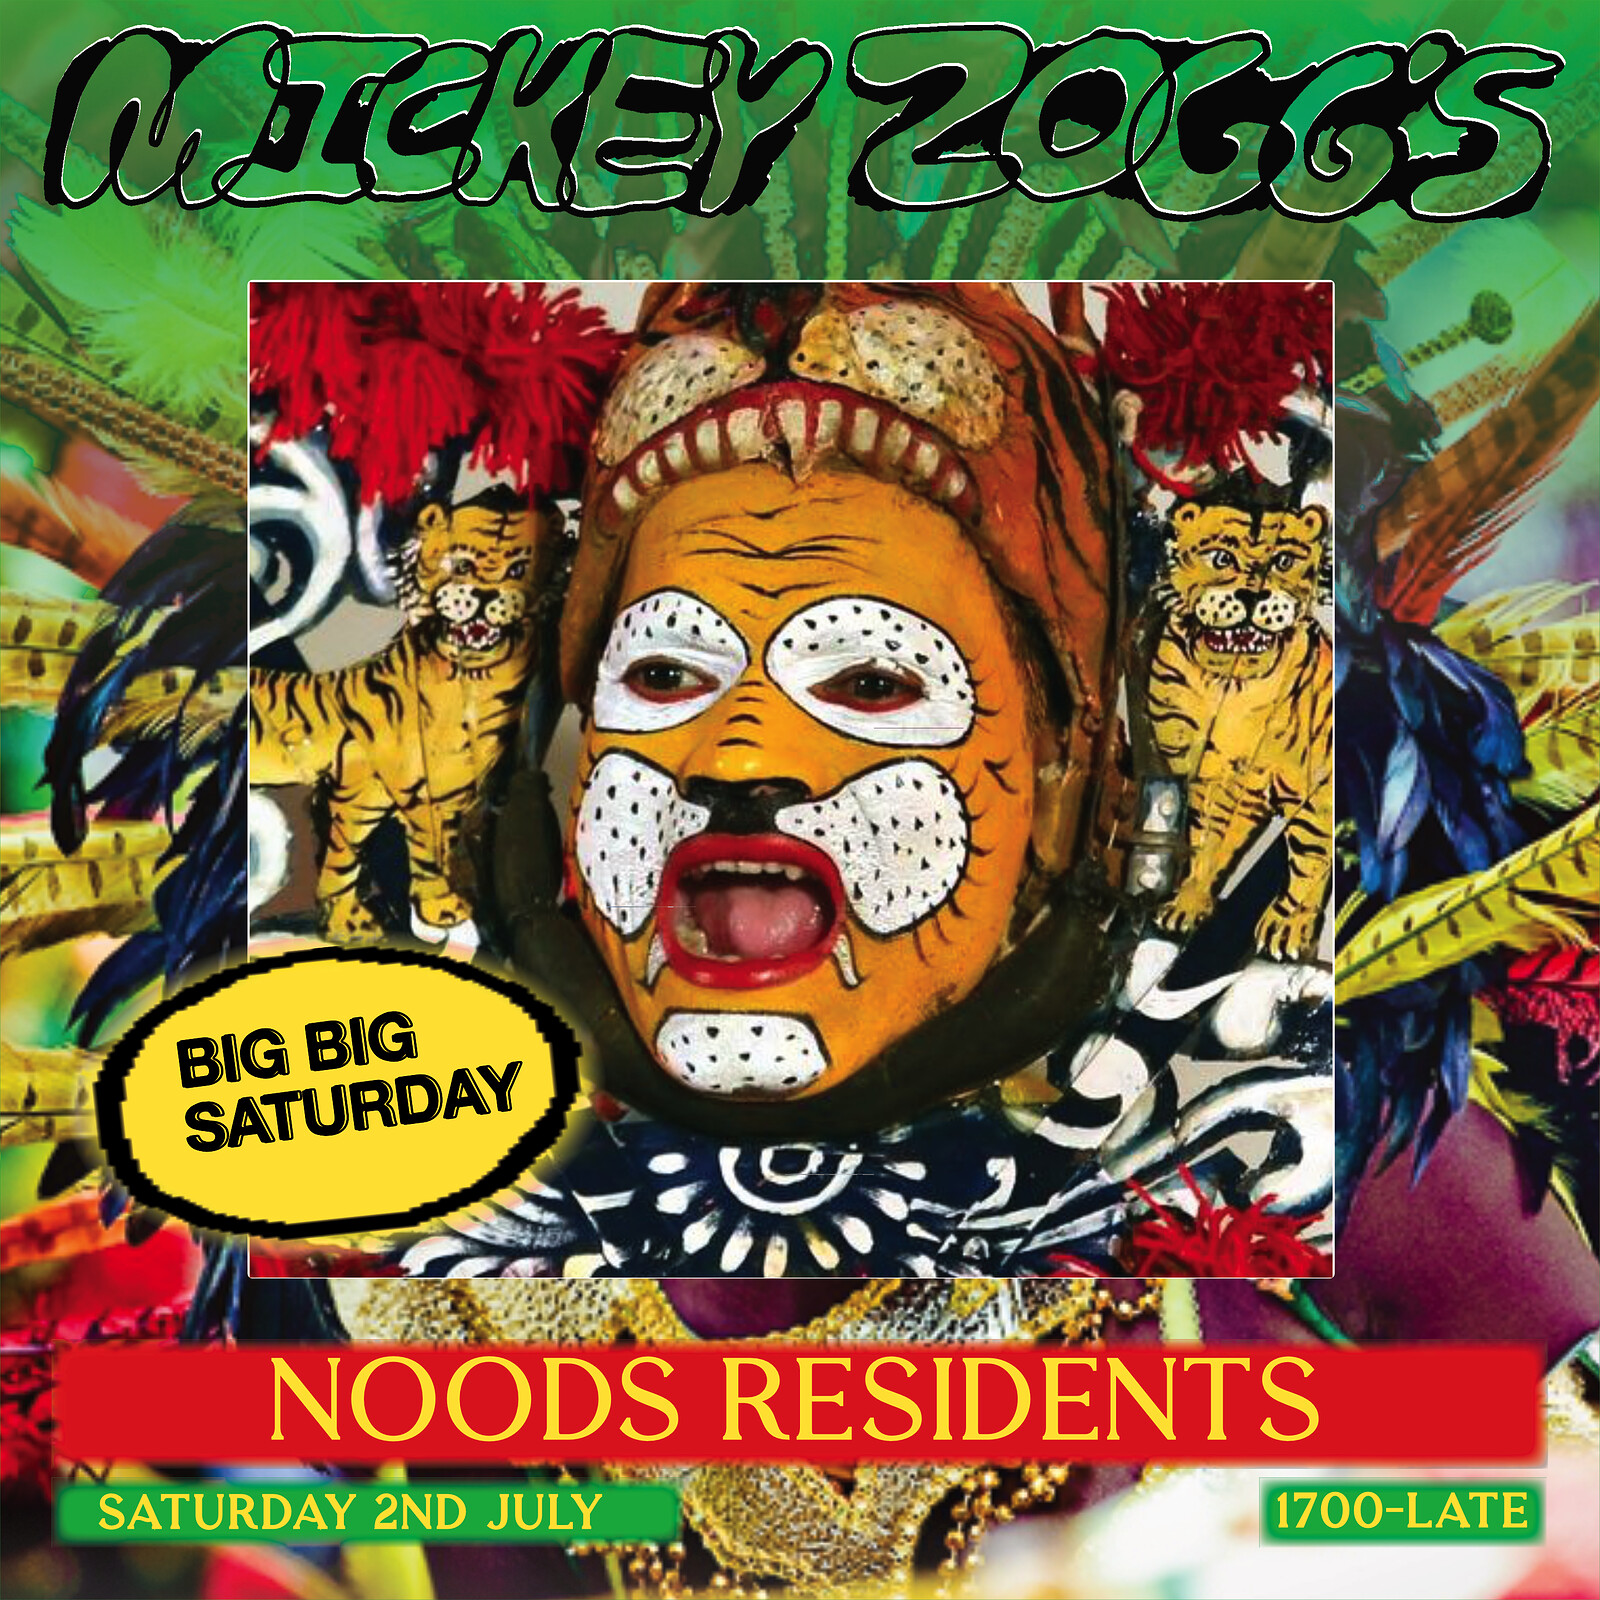 Mickey Zoggs + Noods BIG BIG Saturday at Mickey Zoggs